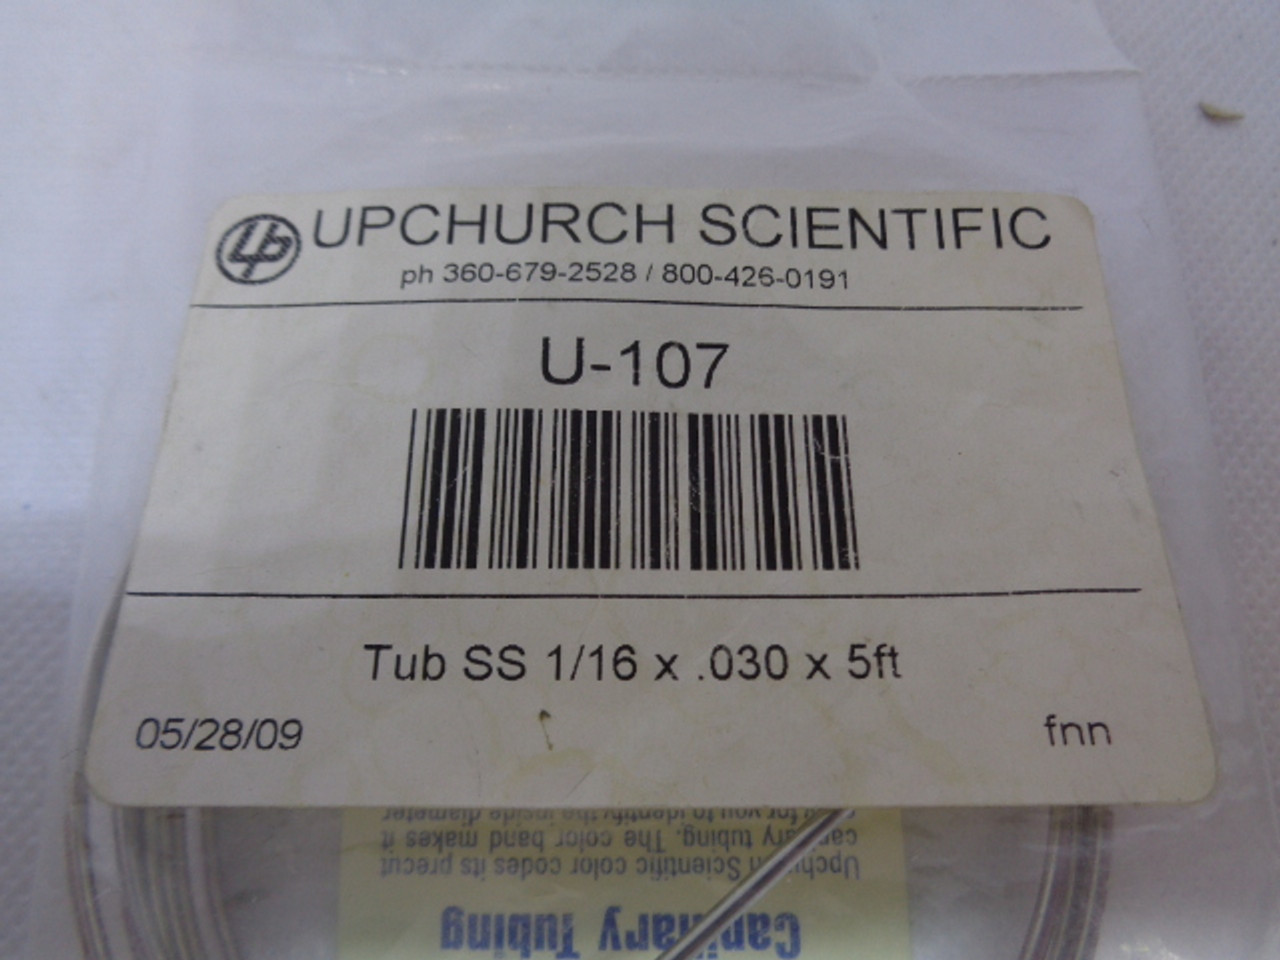 Upchurch Scientific U-107 Tub SS 1/16 x .030 x 5ft.